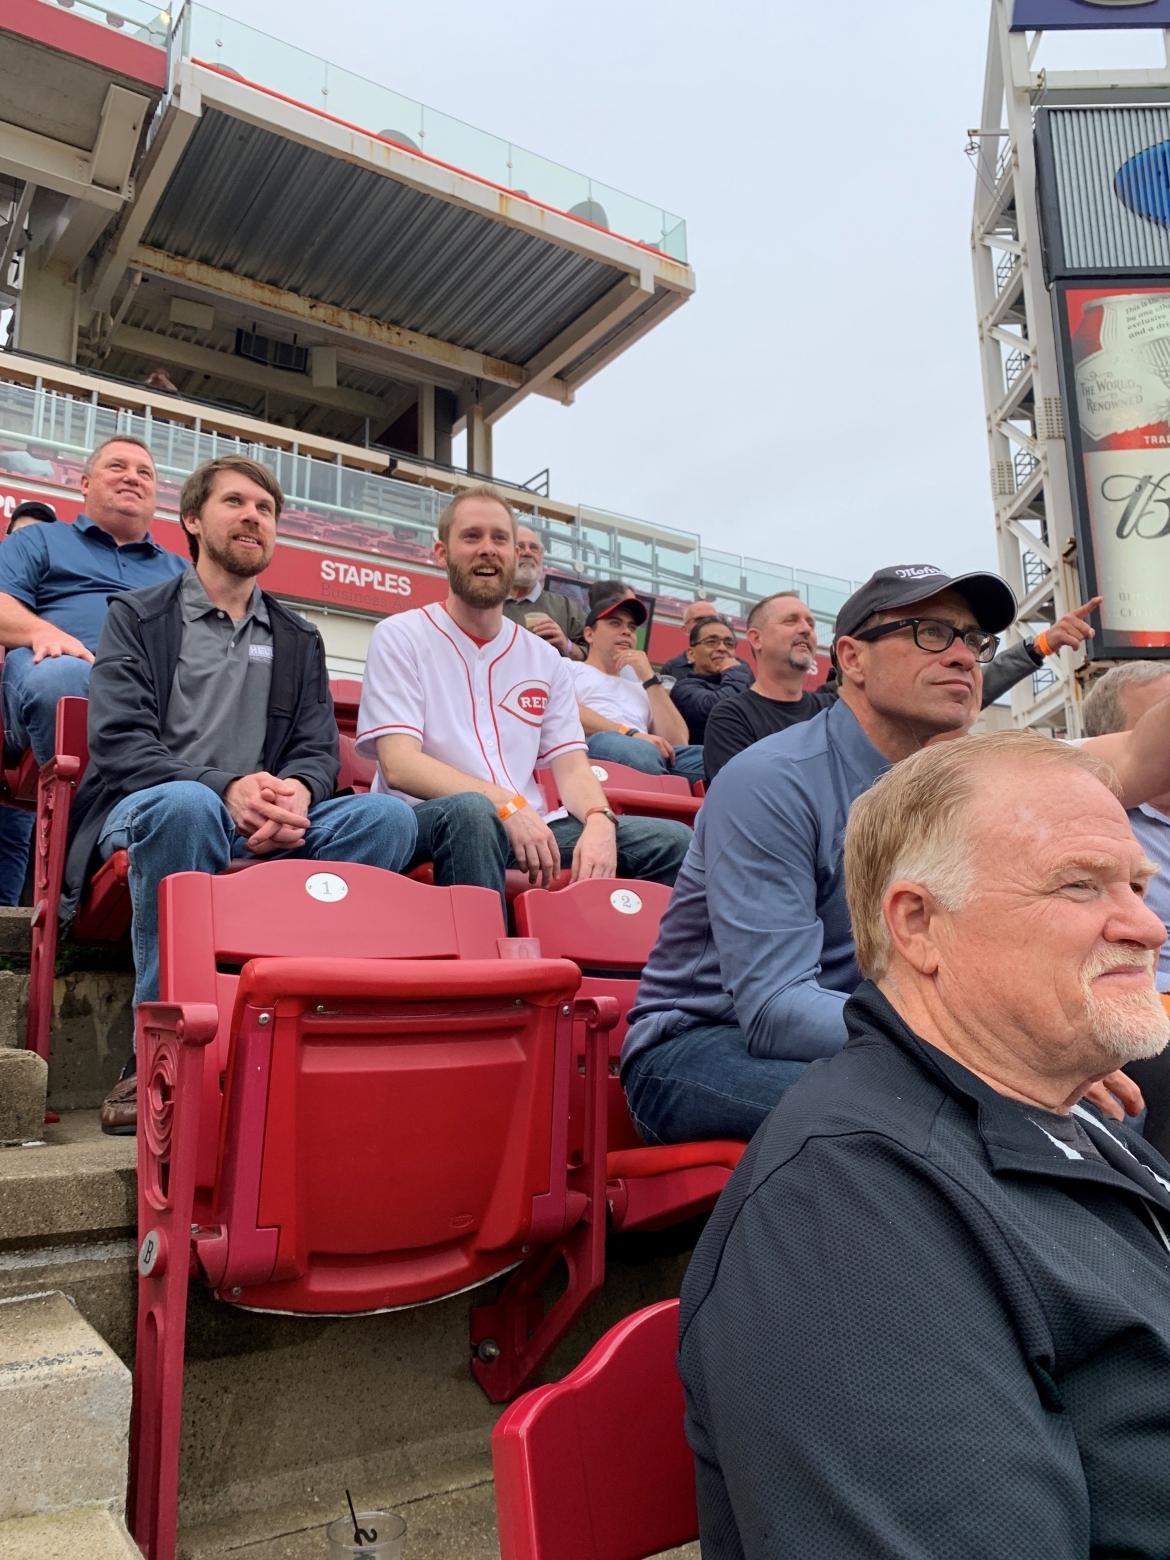 men watching a baseball game